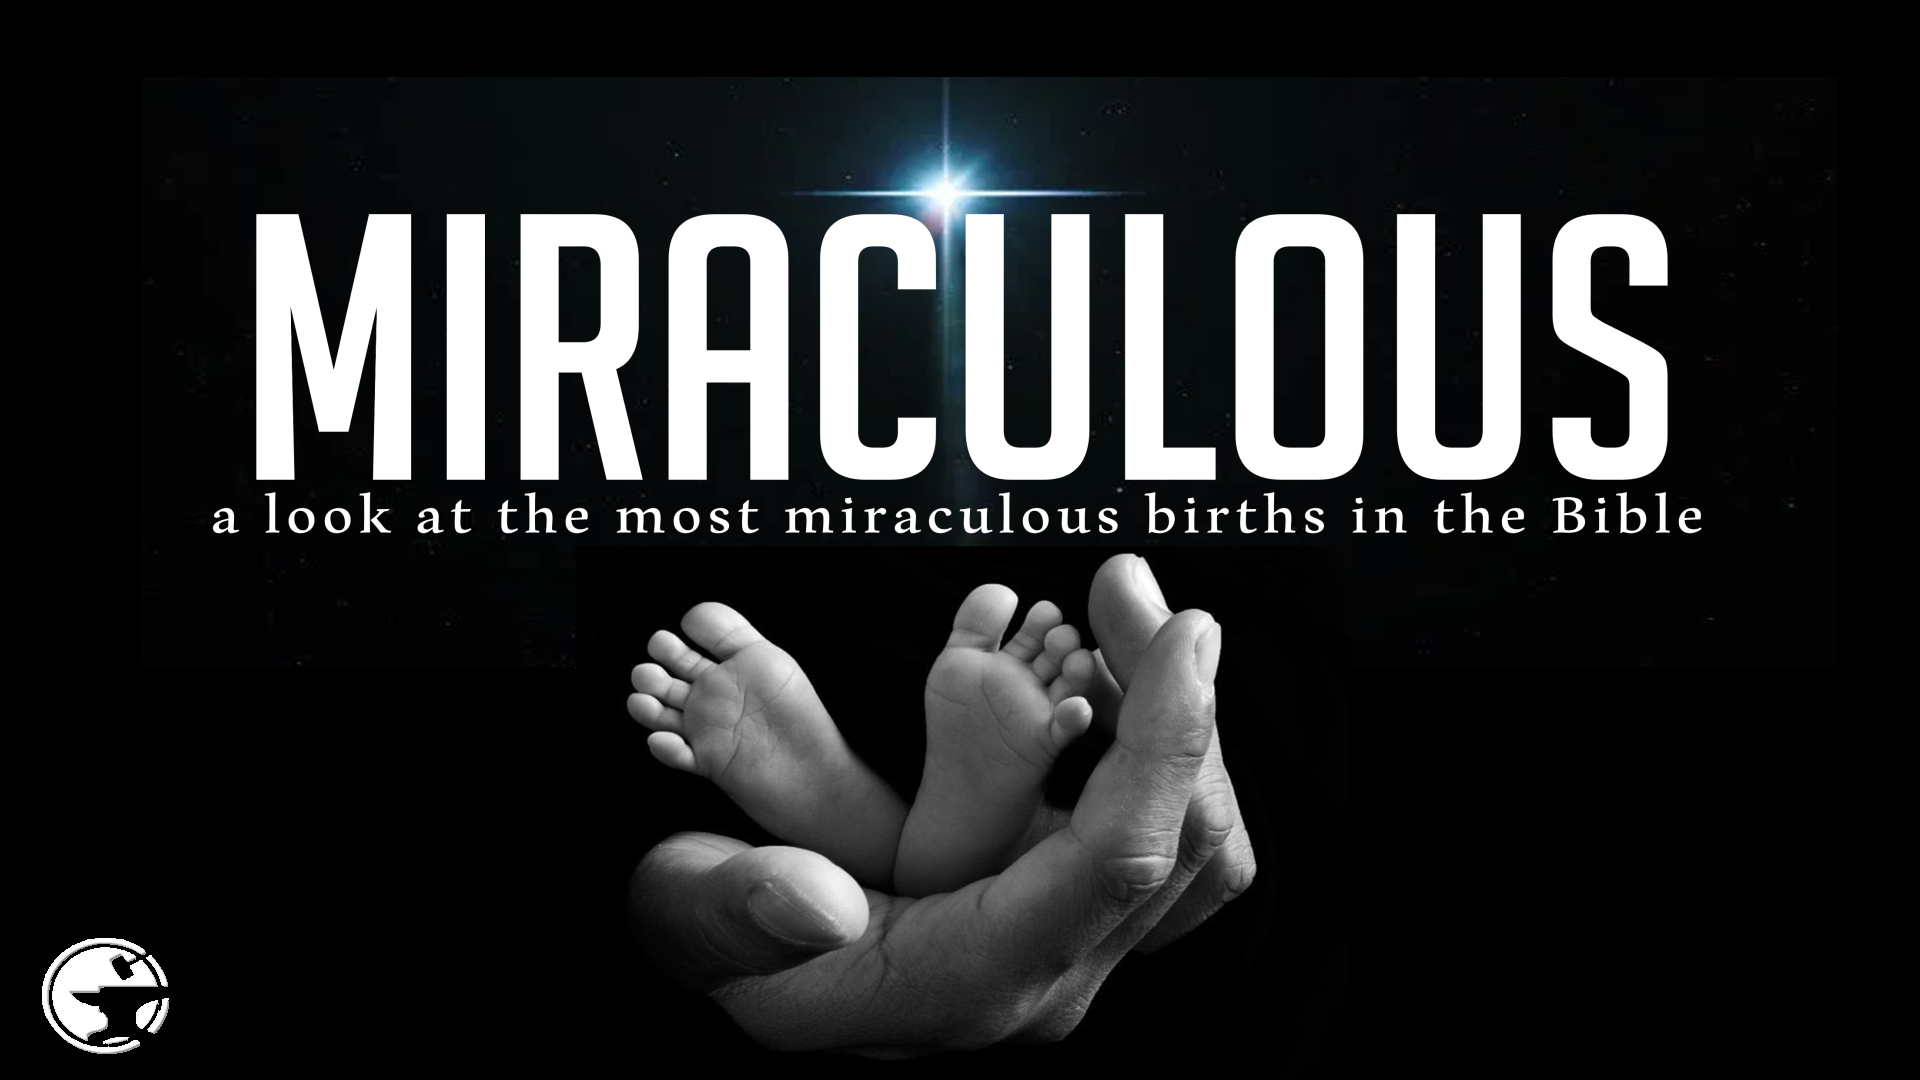 Miraculous Births: David